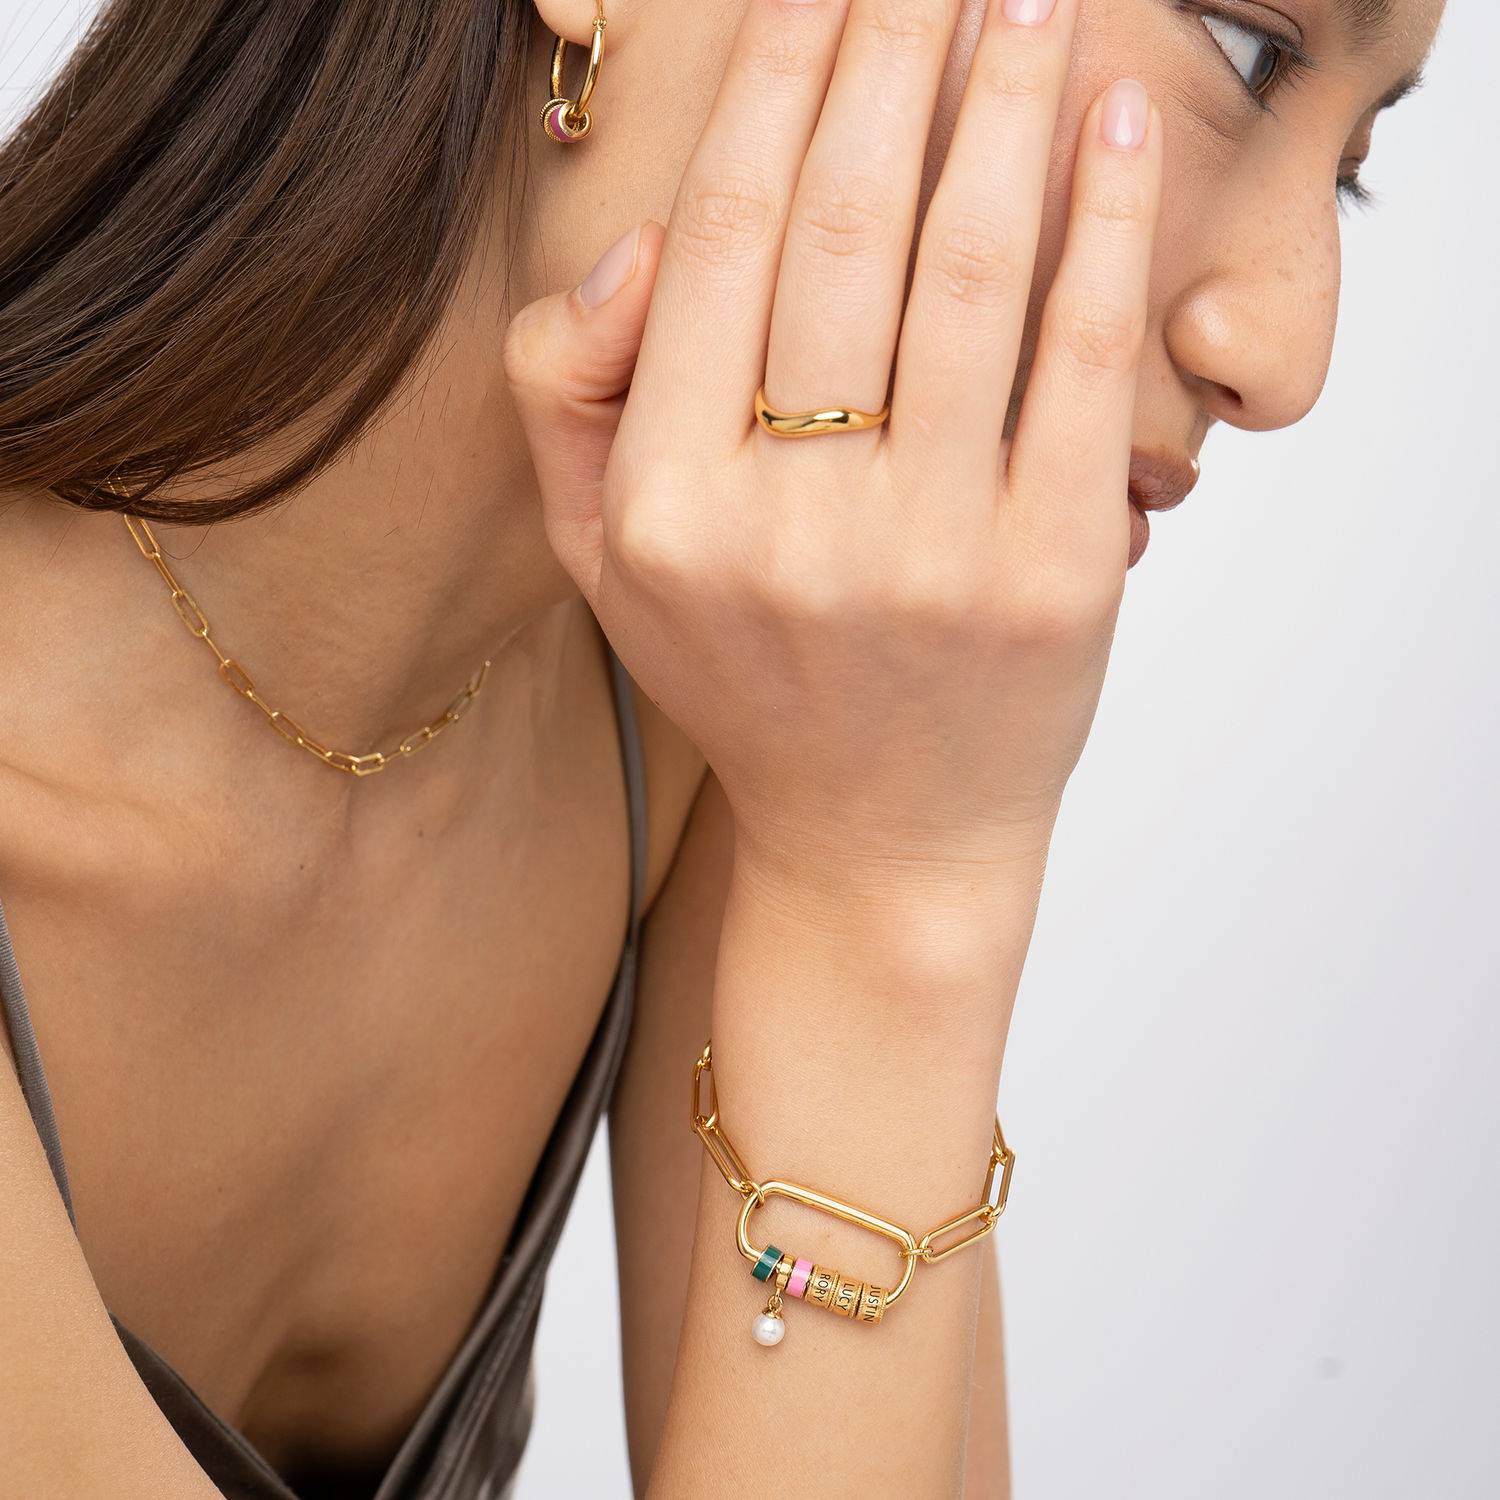 Linda Armband mit ovalem Verschluss und Perle - 750er vergoldetes Silber-3 Produktfoto